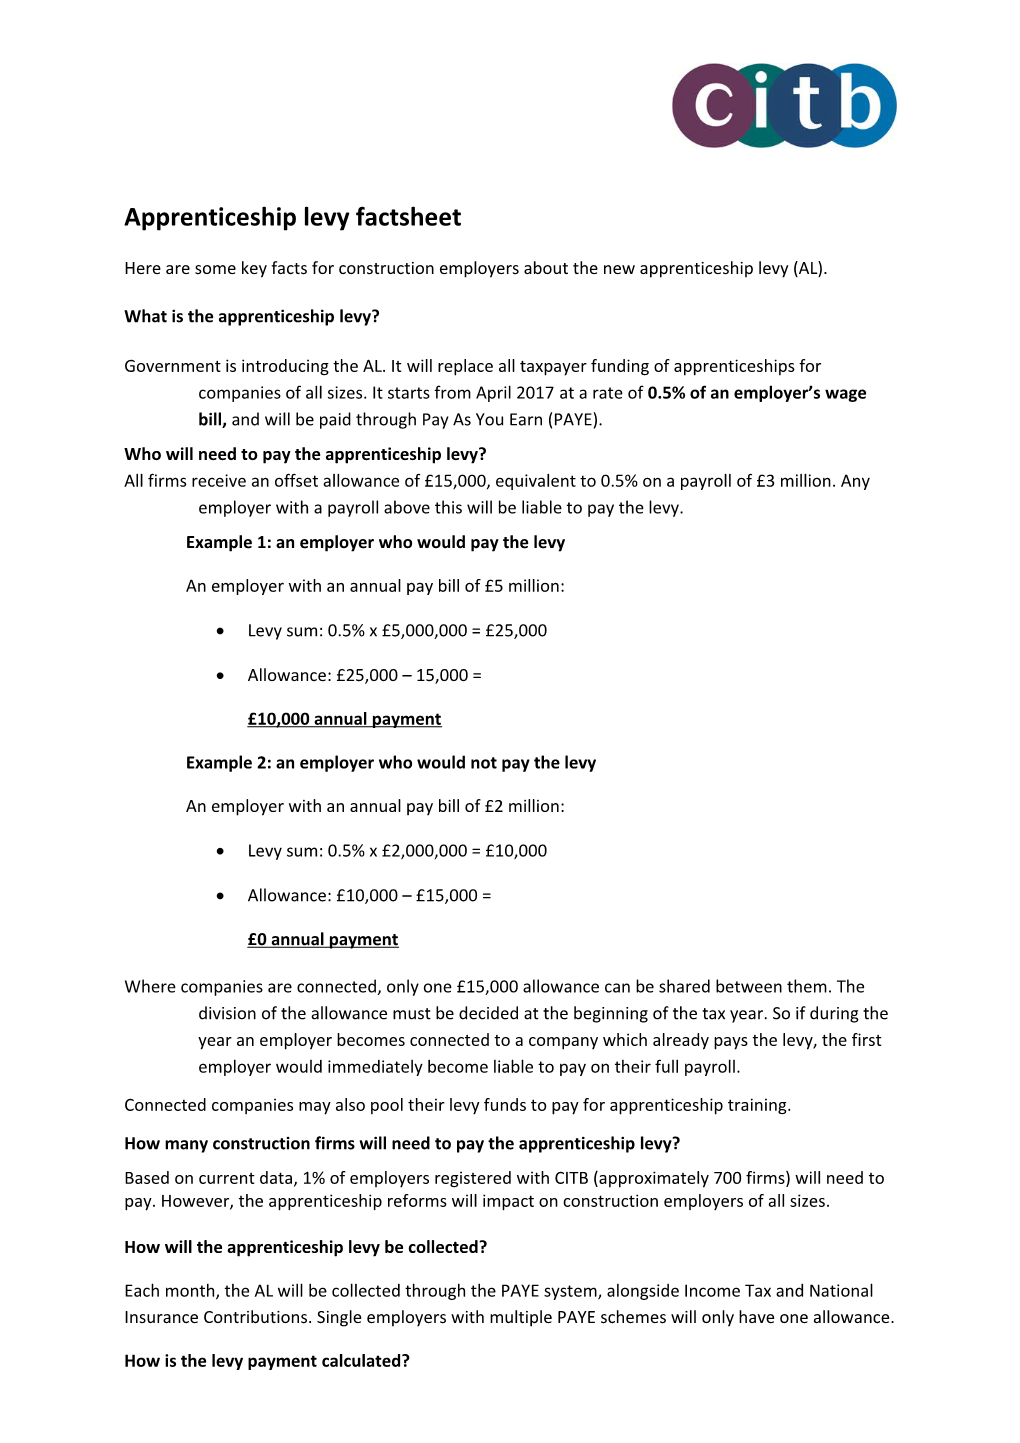 Apprenticeship Levy Factsheet